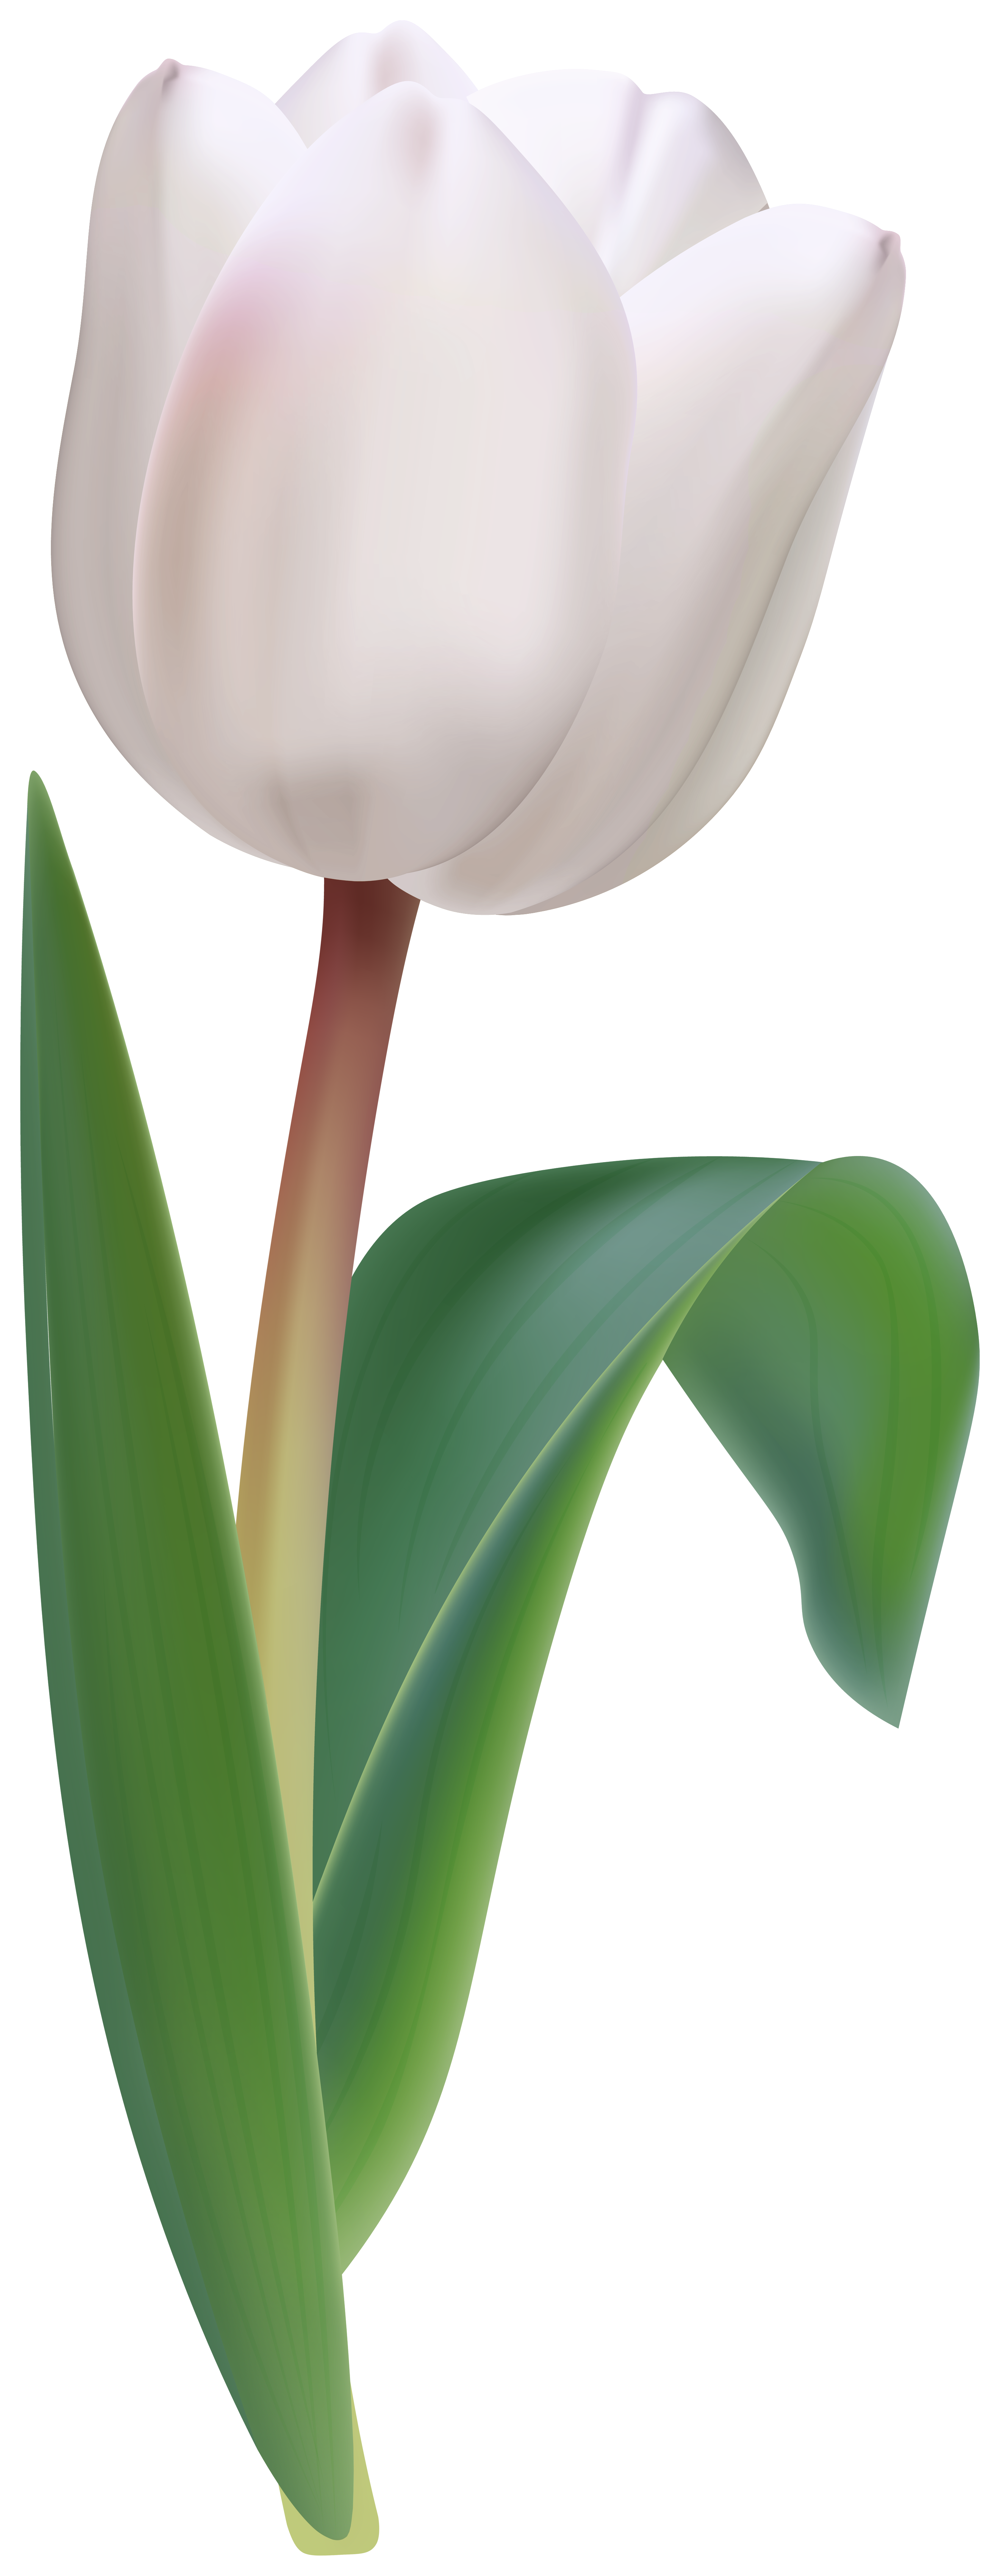 White Tulip Flower Transparent Image.